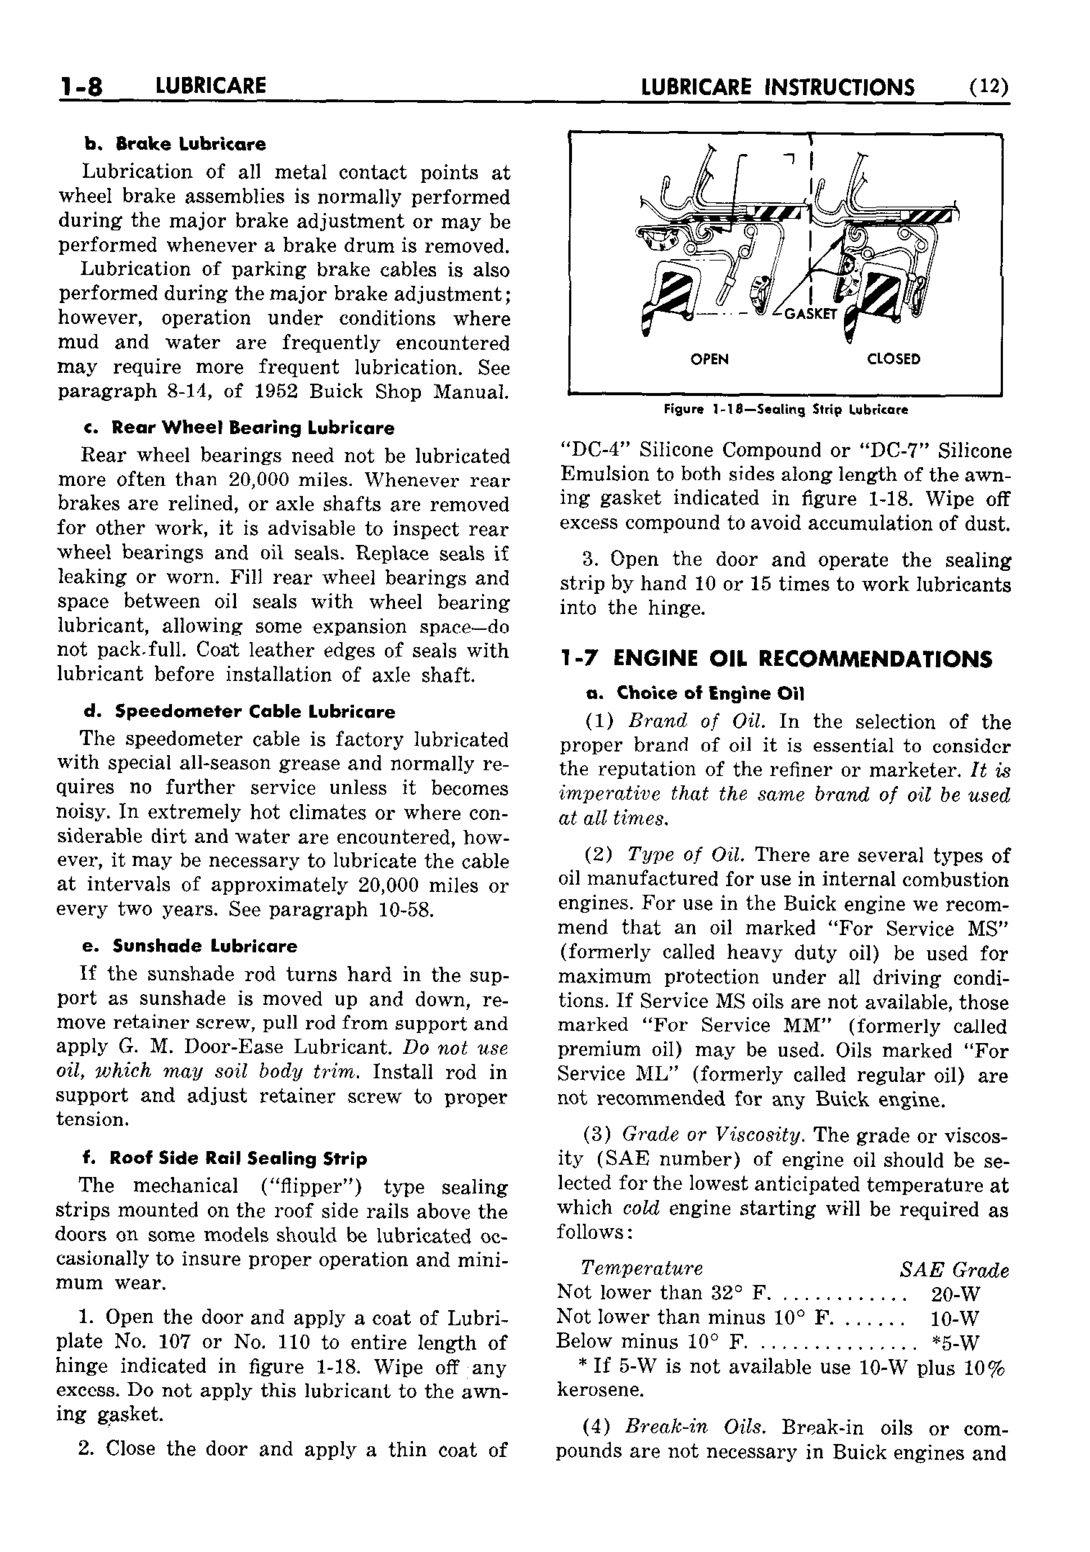 n_02 1953 Buick Shop Manual - Lubricare-008-008.jpg